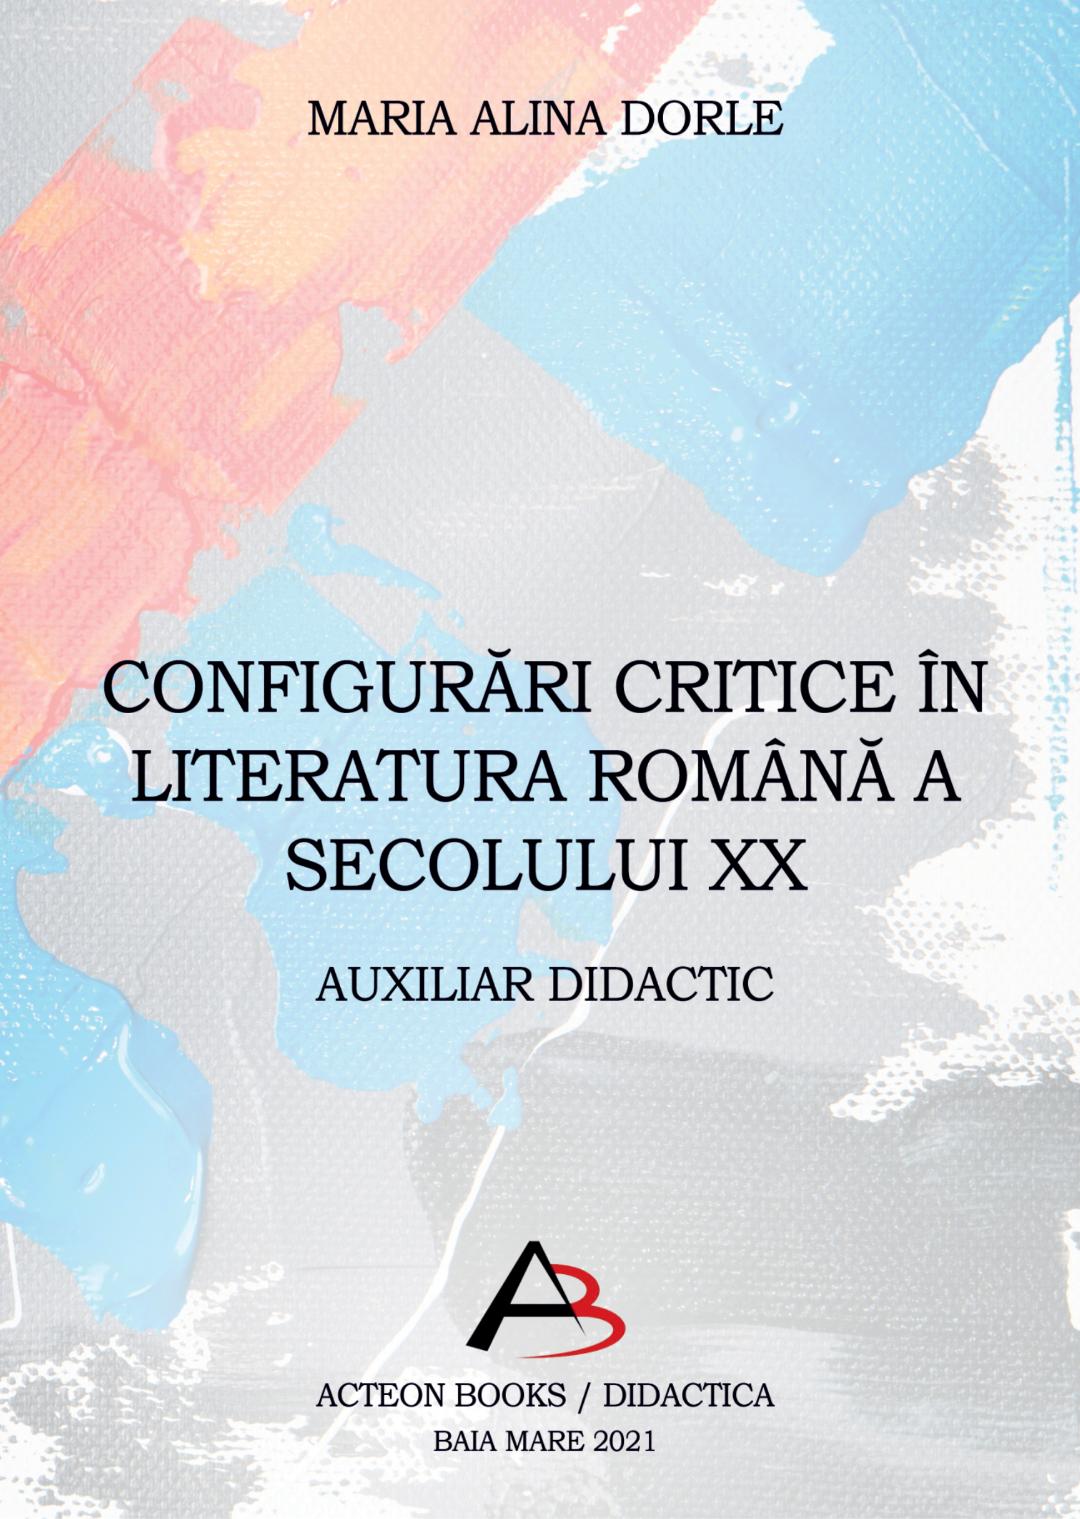 MARIA ALINA DORLE CONFIGURĂRI CRITICE ÎN LITERATURA ROMÂNĂ‚ A SECOLULUI XX

AUXILIAR DIDACTIC
